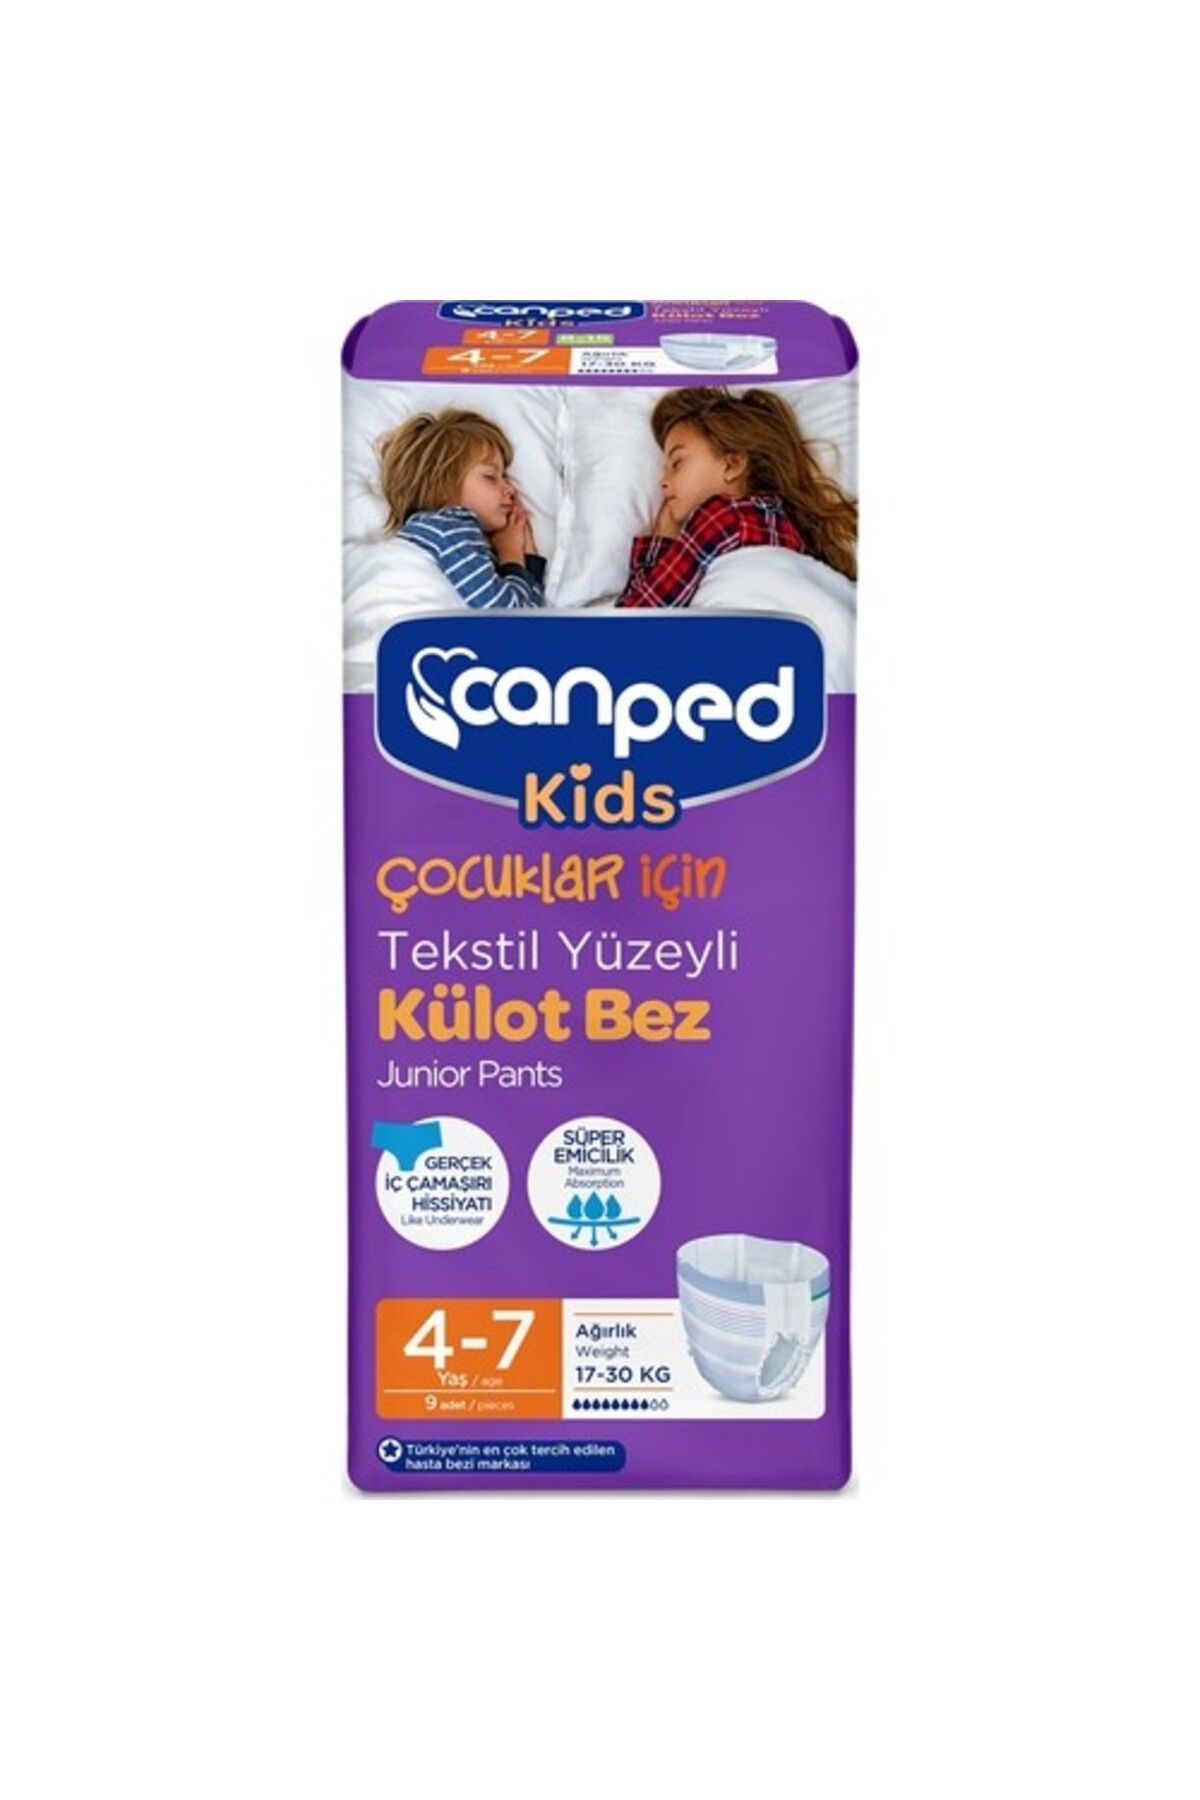 Canped Kids Çoçuklar Için Külot Bez Tekstil Yüzeyli Yaş:4-7 (17-30kg) (iç Adet 9) Tekli Pk